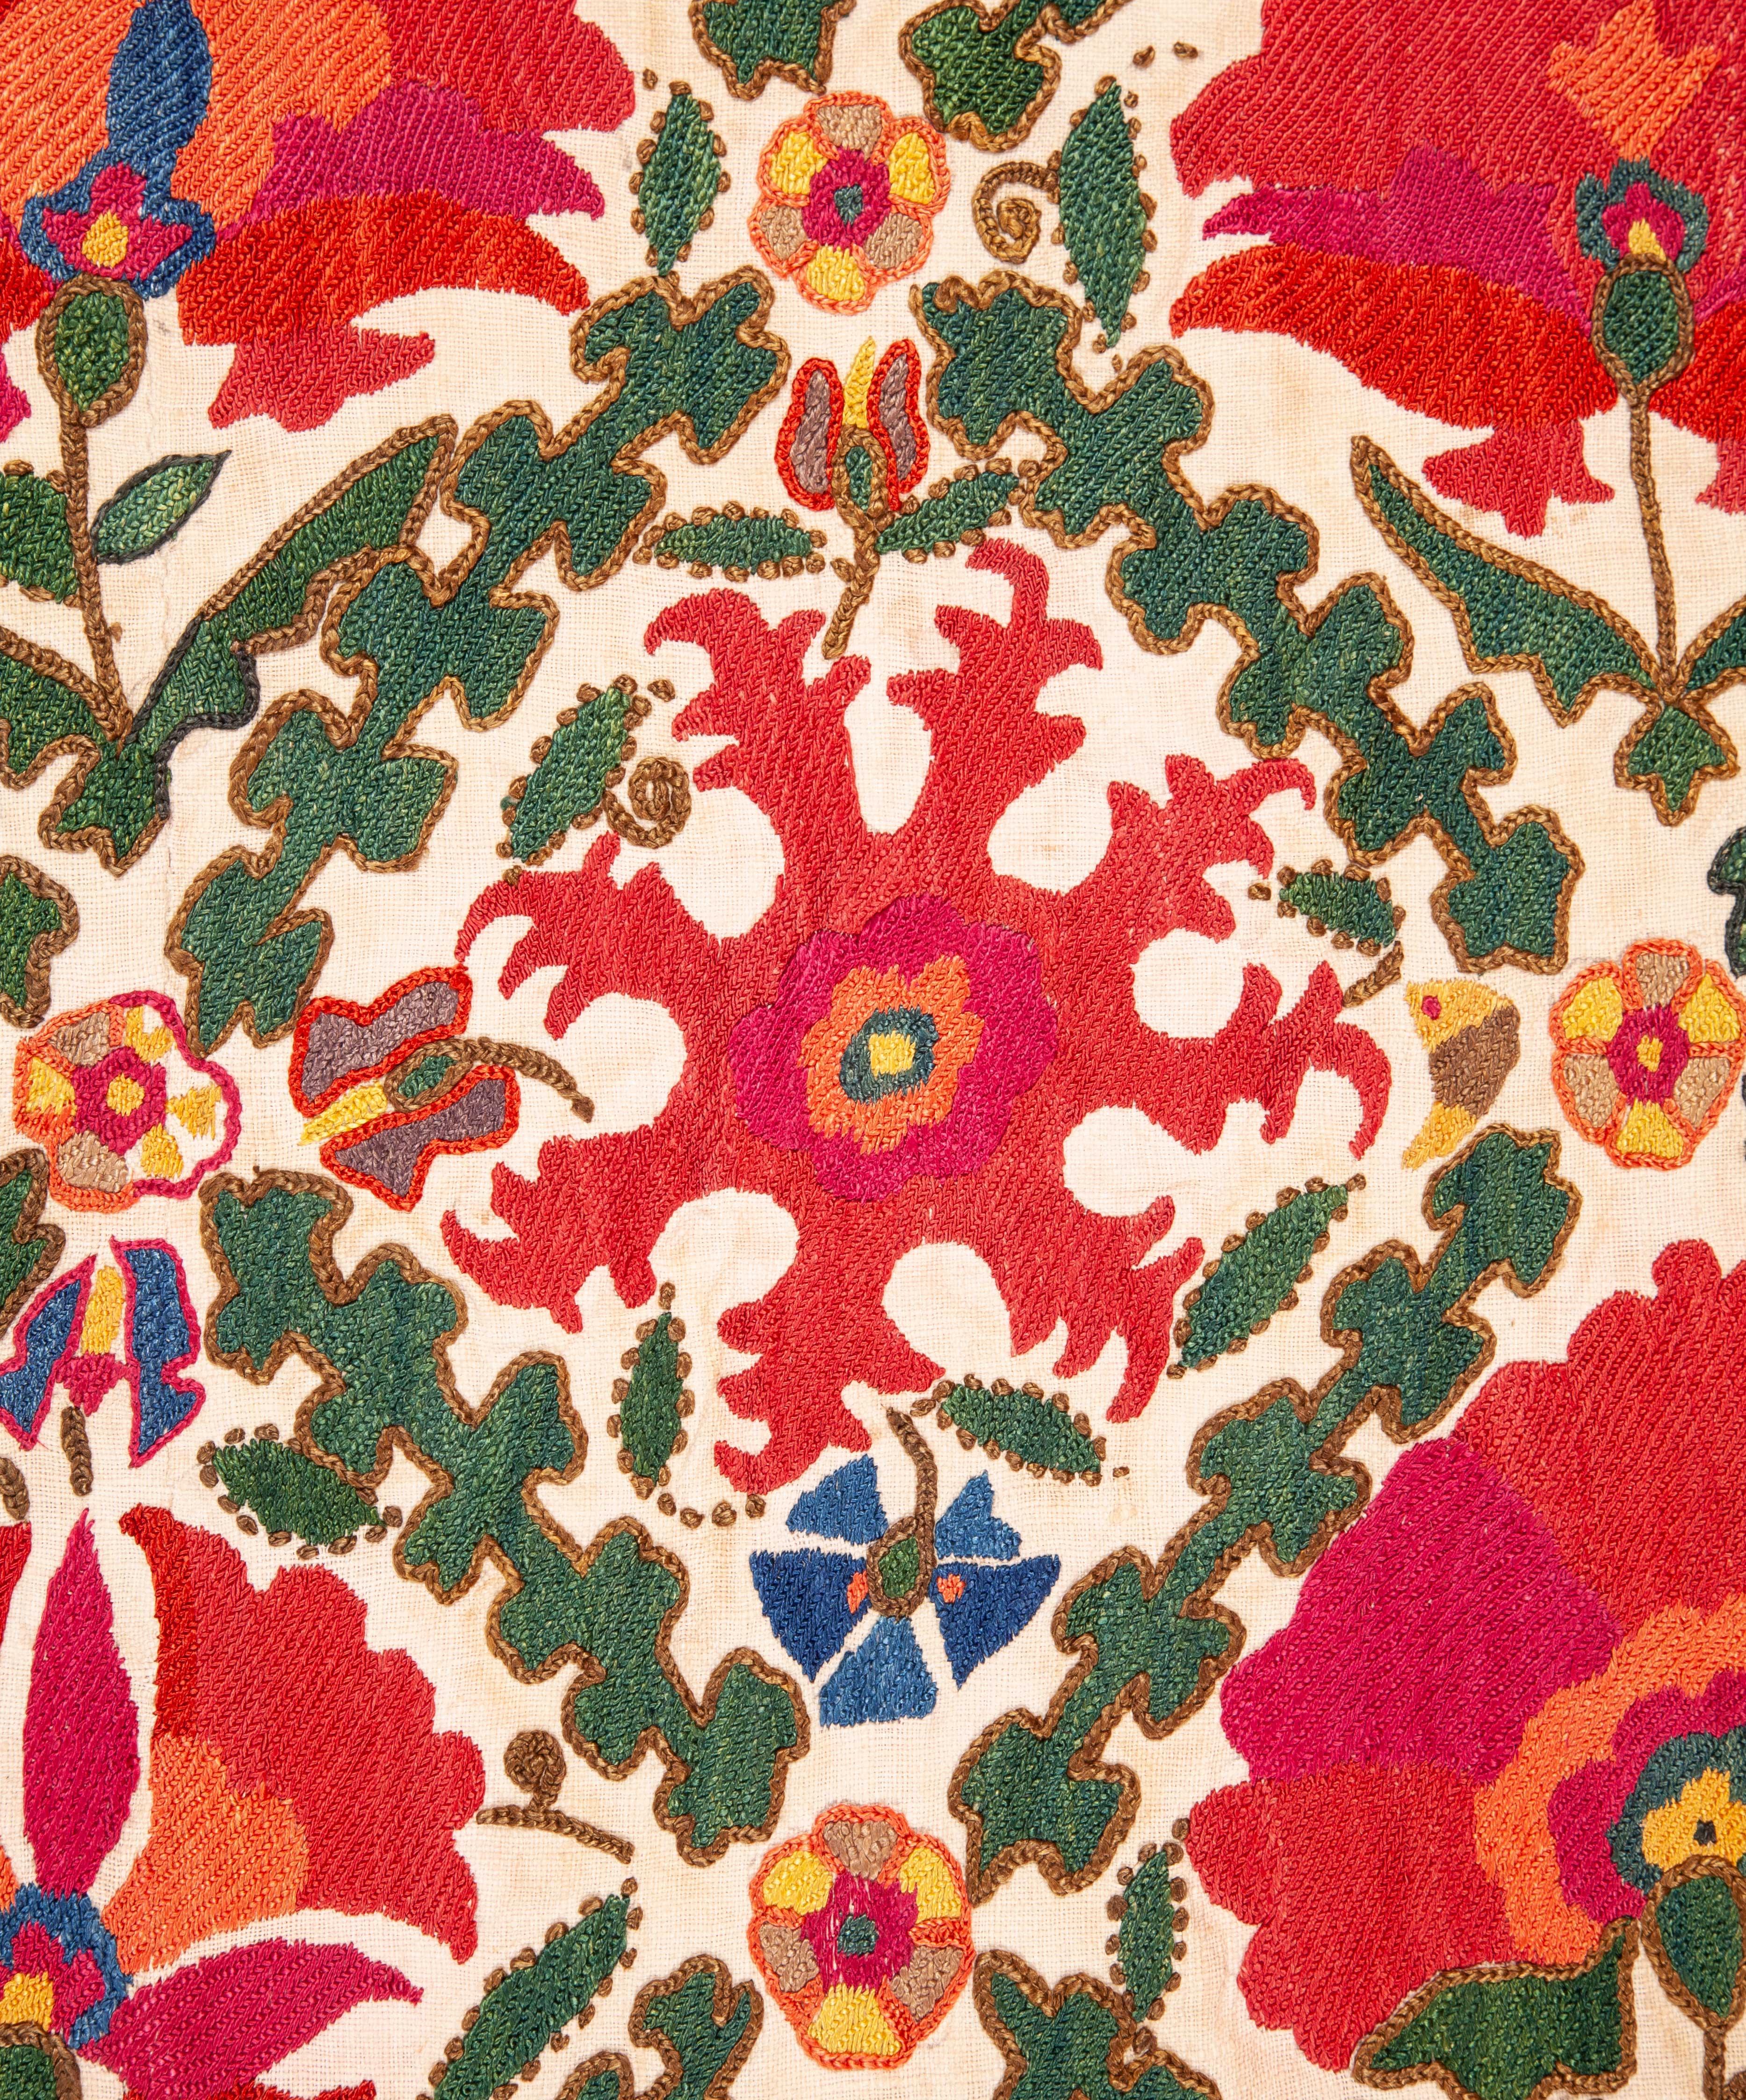 Embroidered Antique Uzbek Suzani from Bukhara Uzbekistan, 19th Century